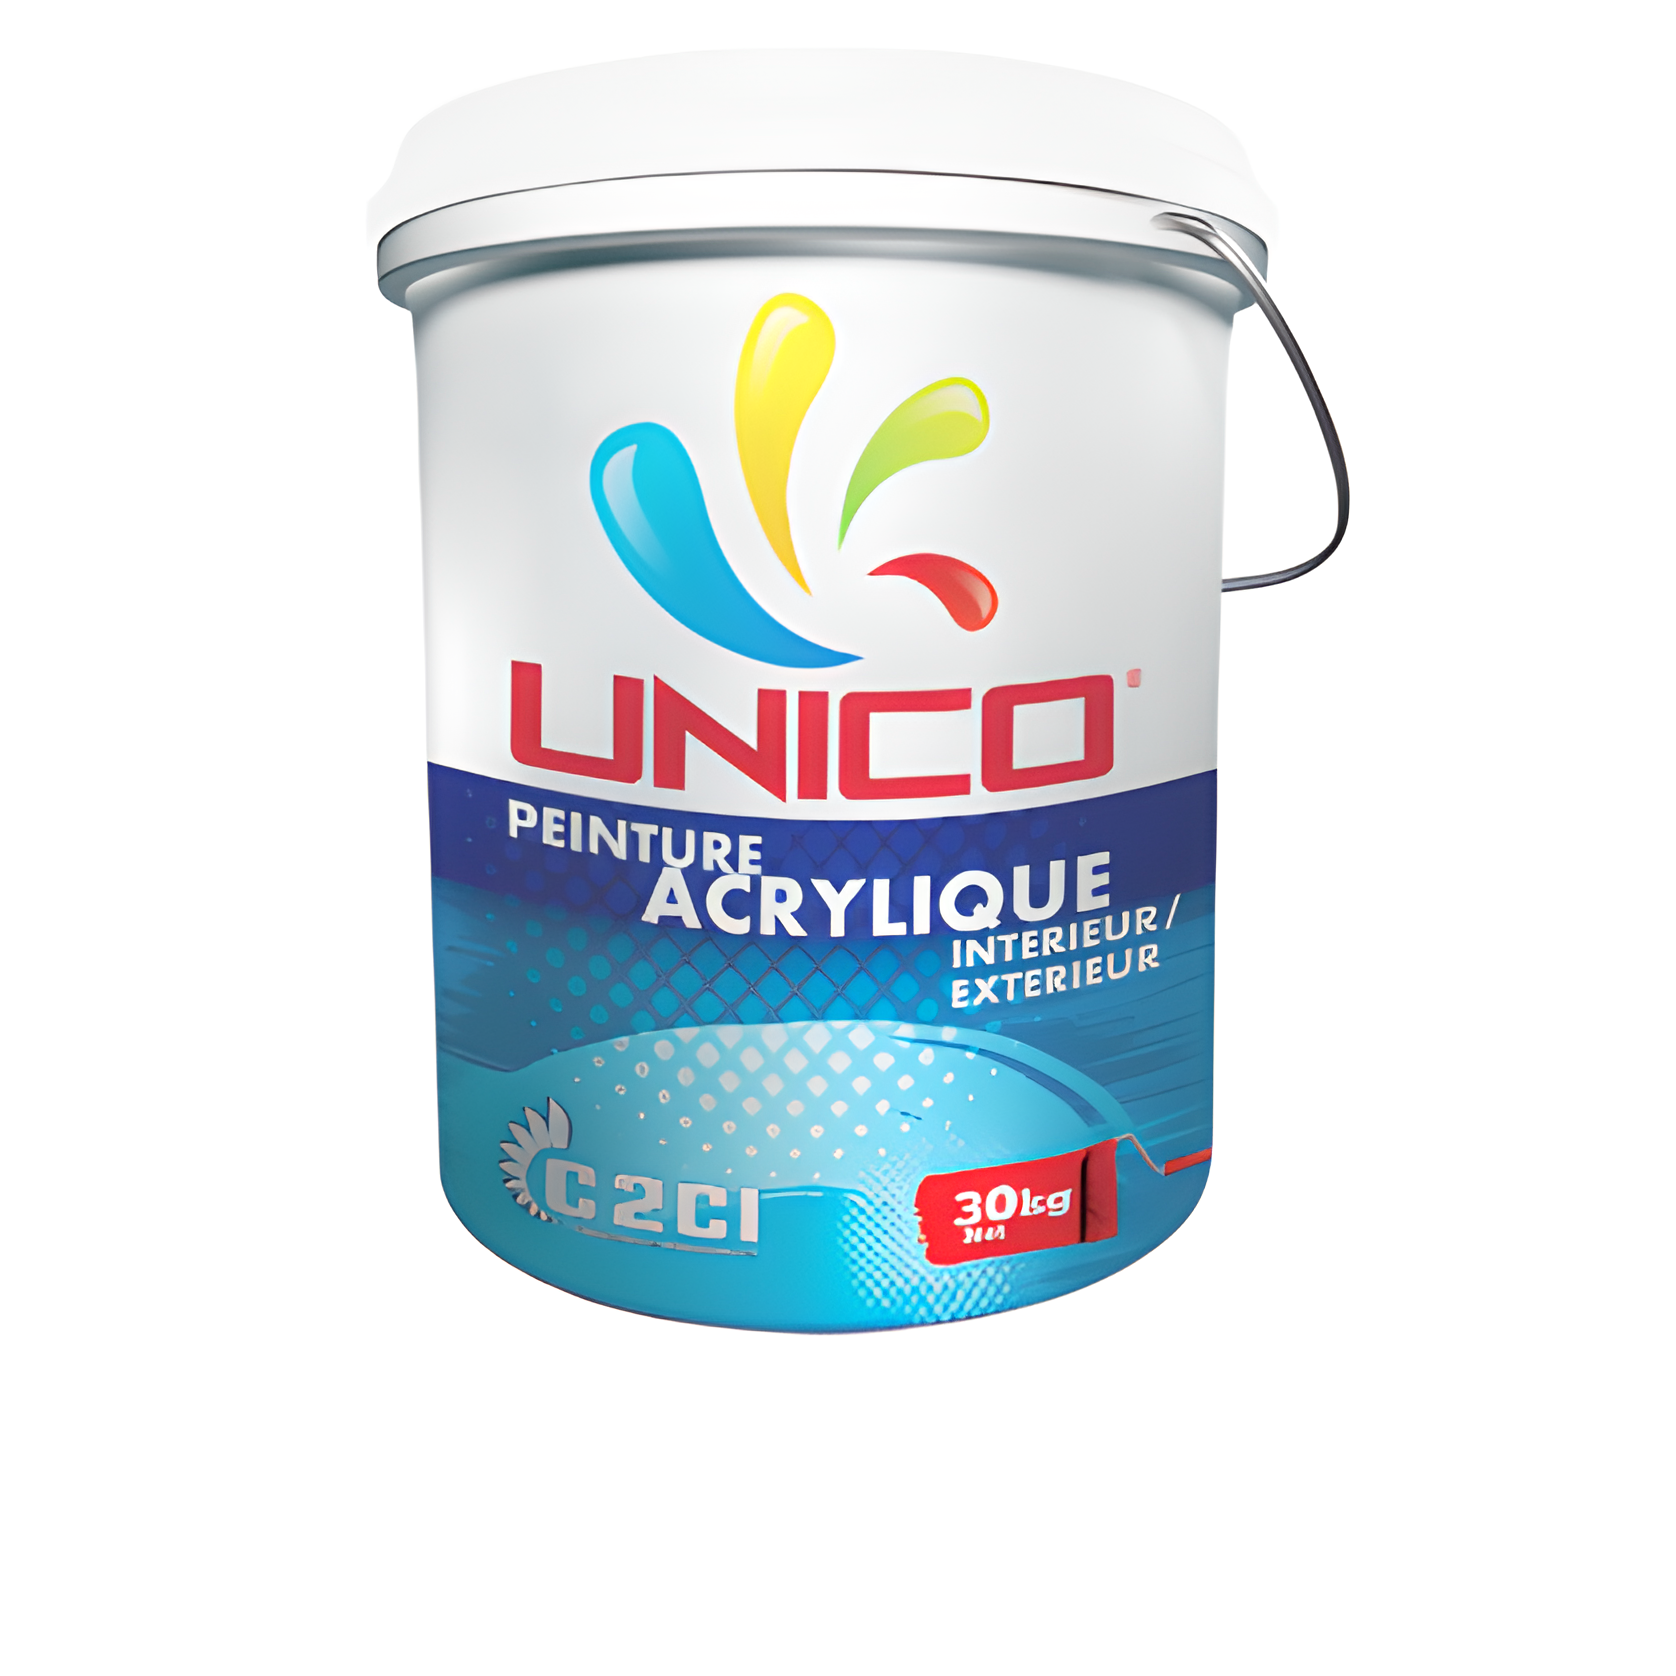 Peinture acrylique UNICO intérieur - extérieur / 30 KG